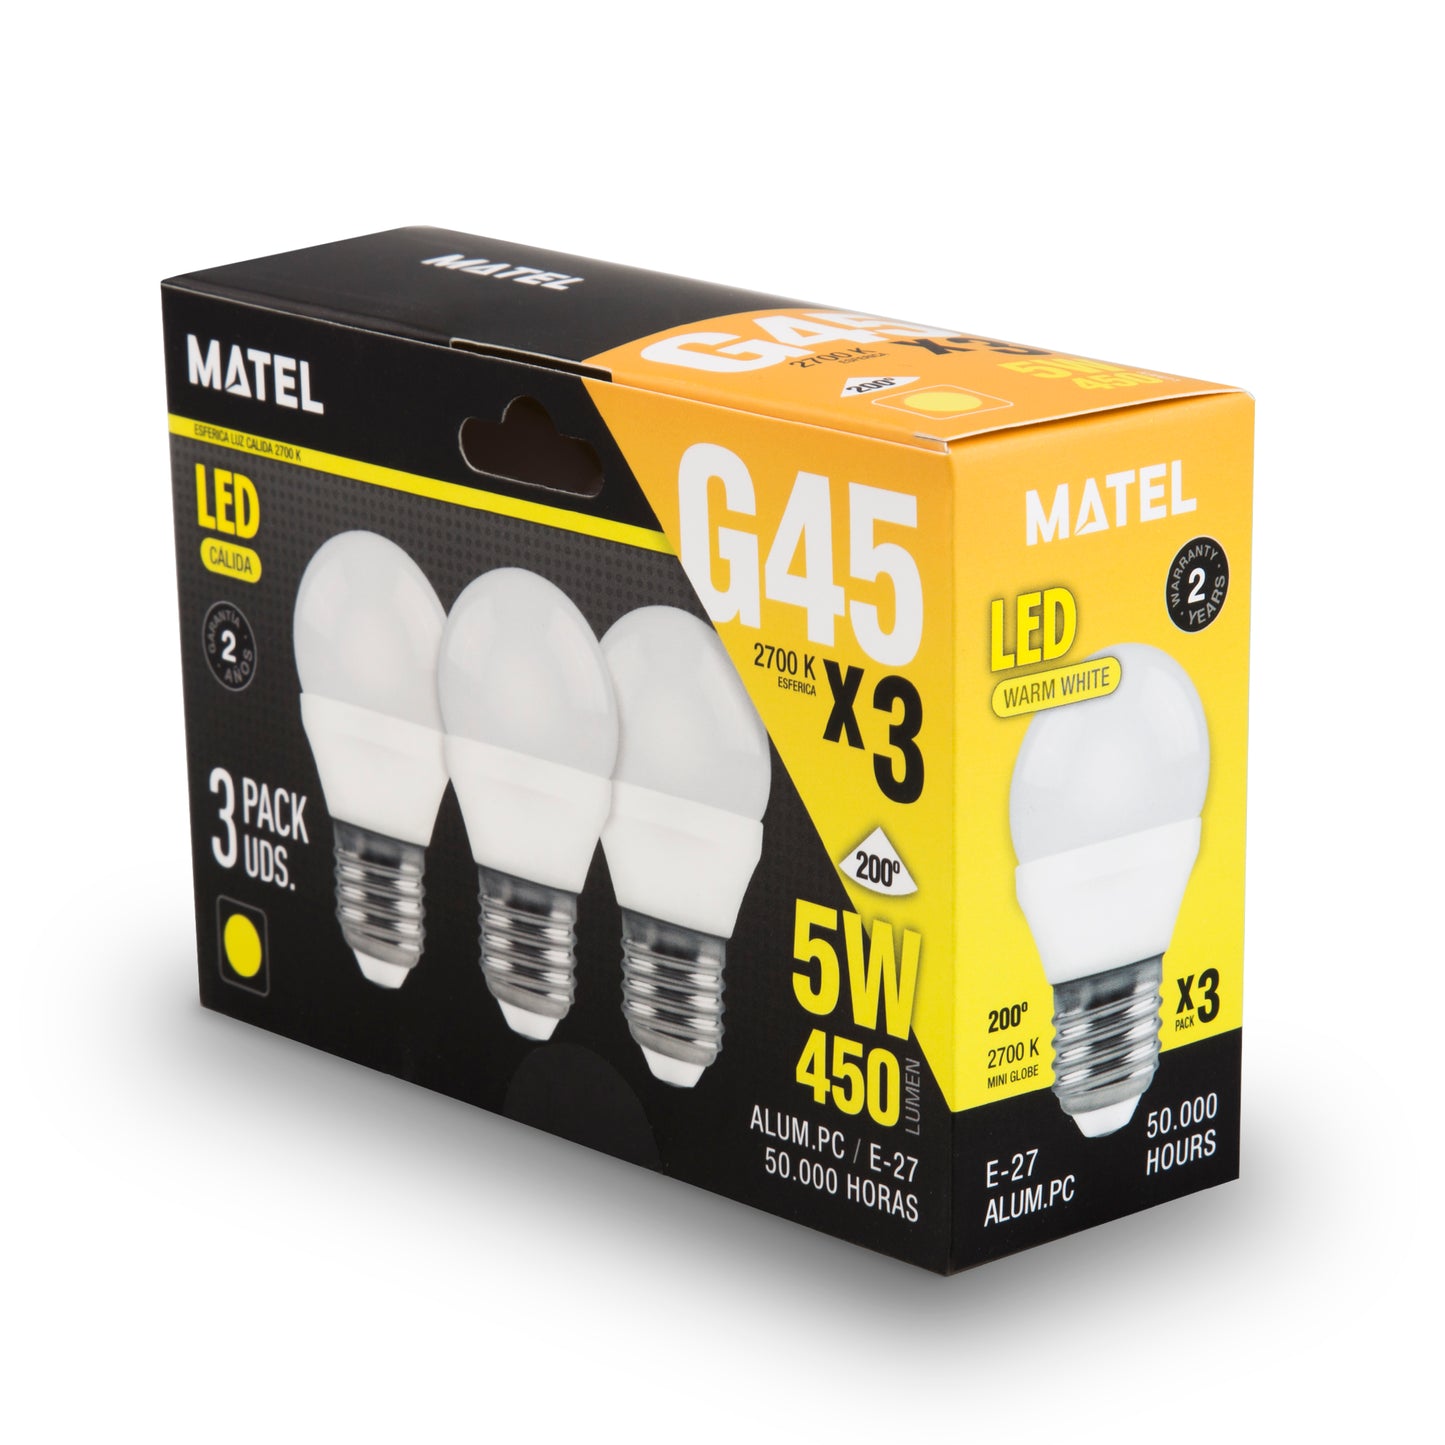 HOT MATEL E27 LAMPE LED SPHÉRIQUE CHAUDE 5W (3 UNITÉS) 